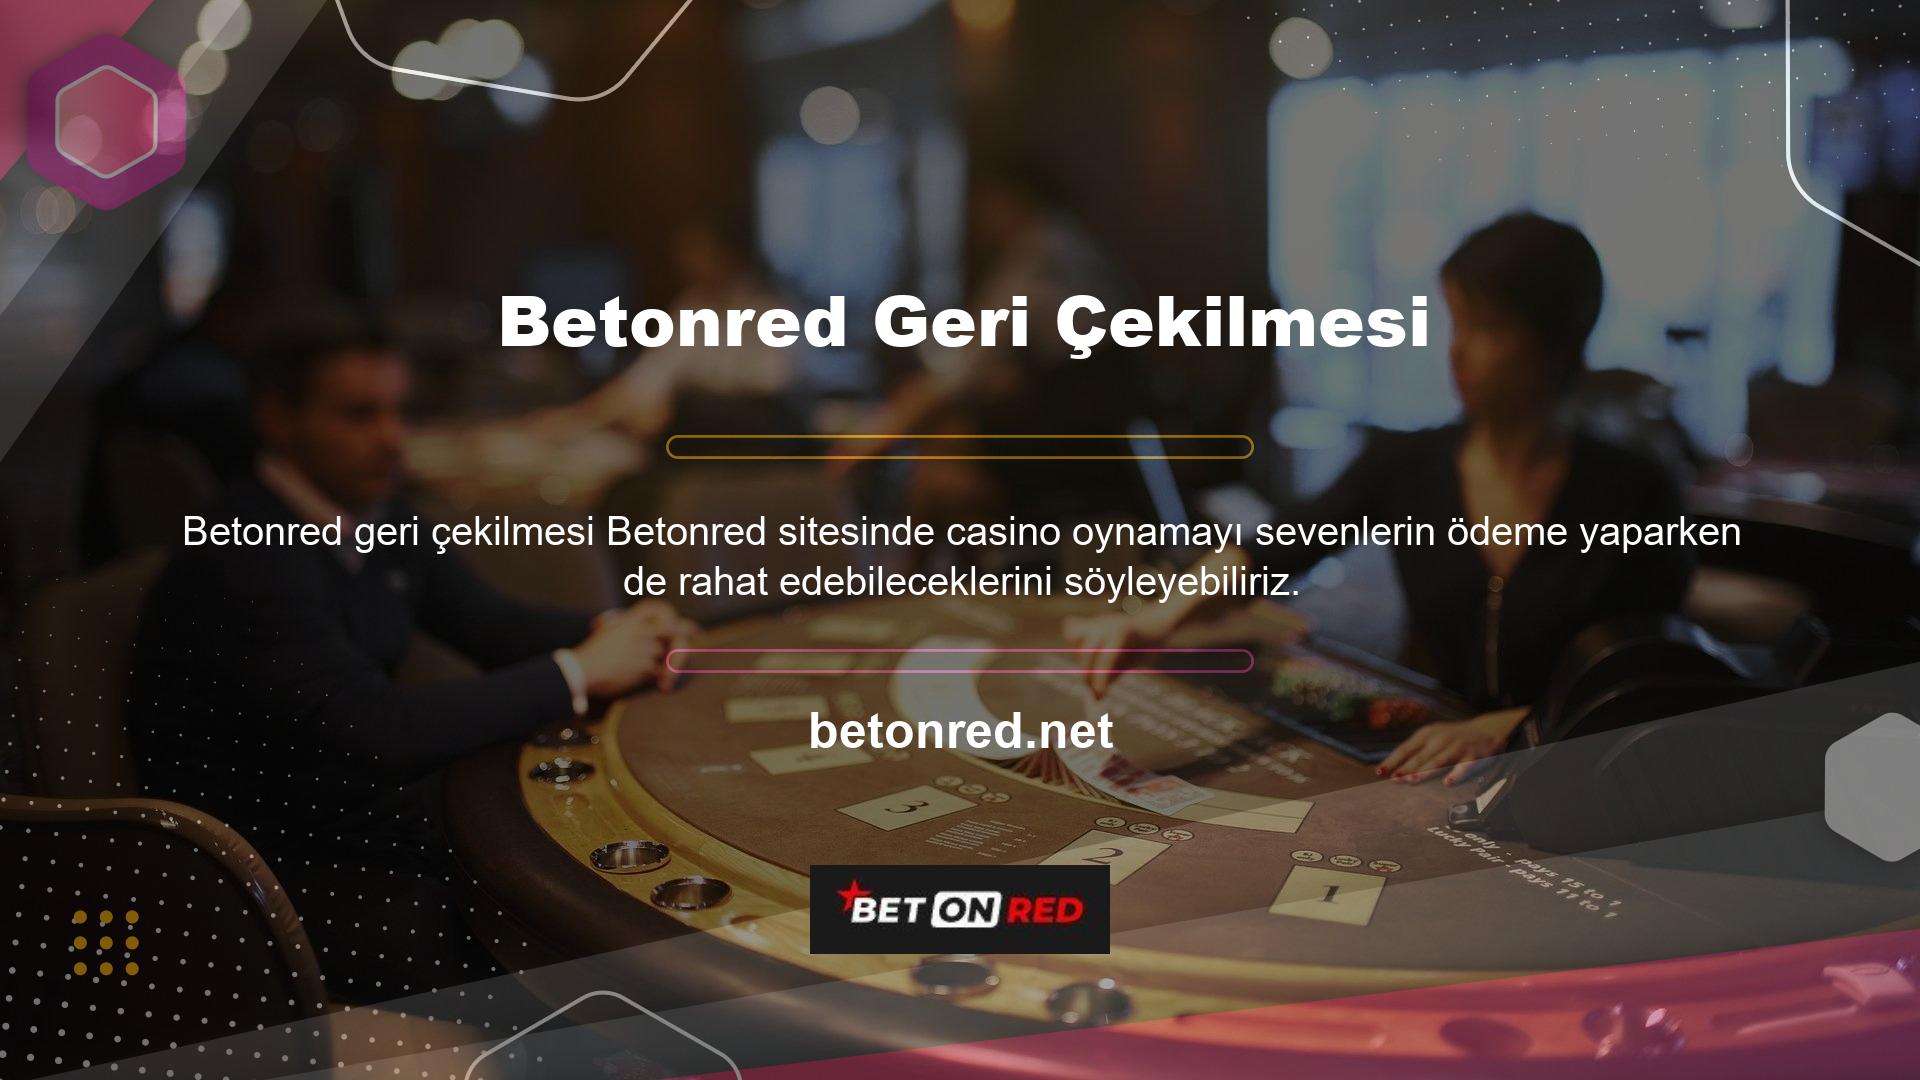 Betonred sitesindeki casino tutkunlarının aidatlarını ödediğini ve sorunsuz bir ödeme deneyimi yaşadığını söylemek yanlış olmaz